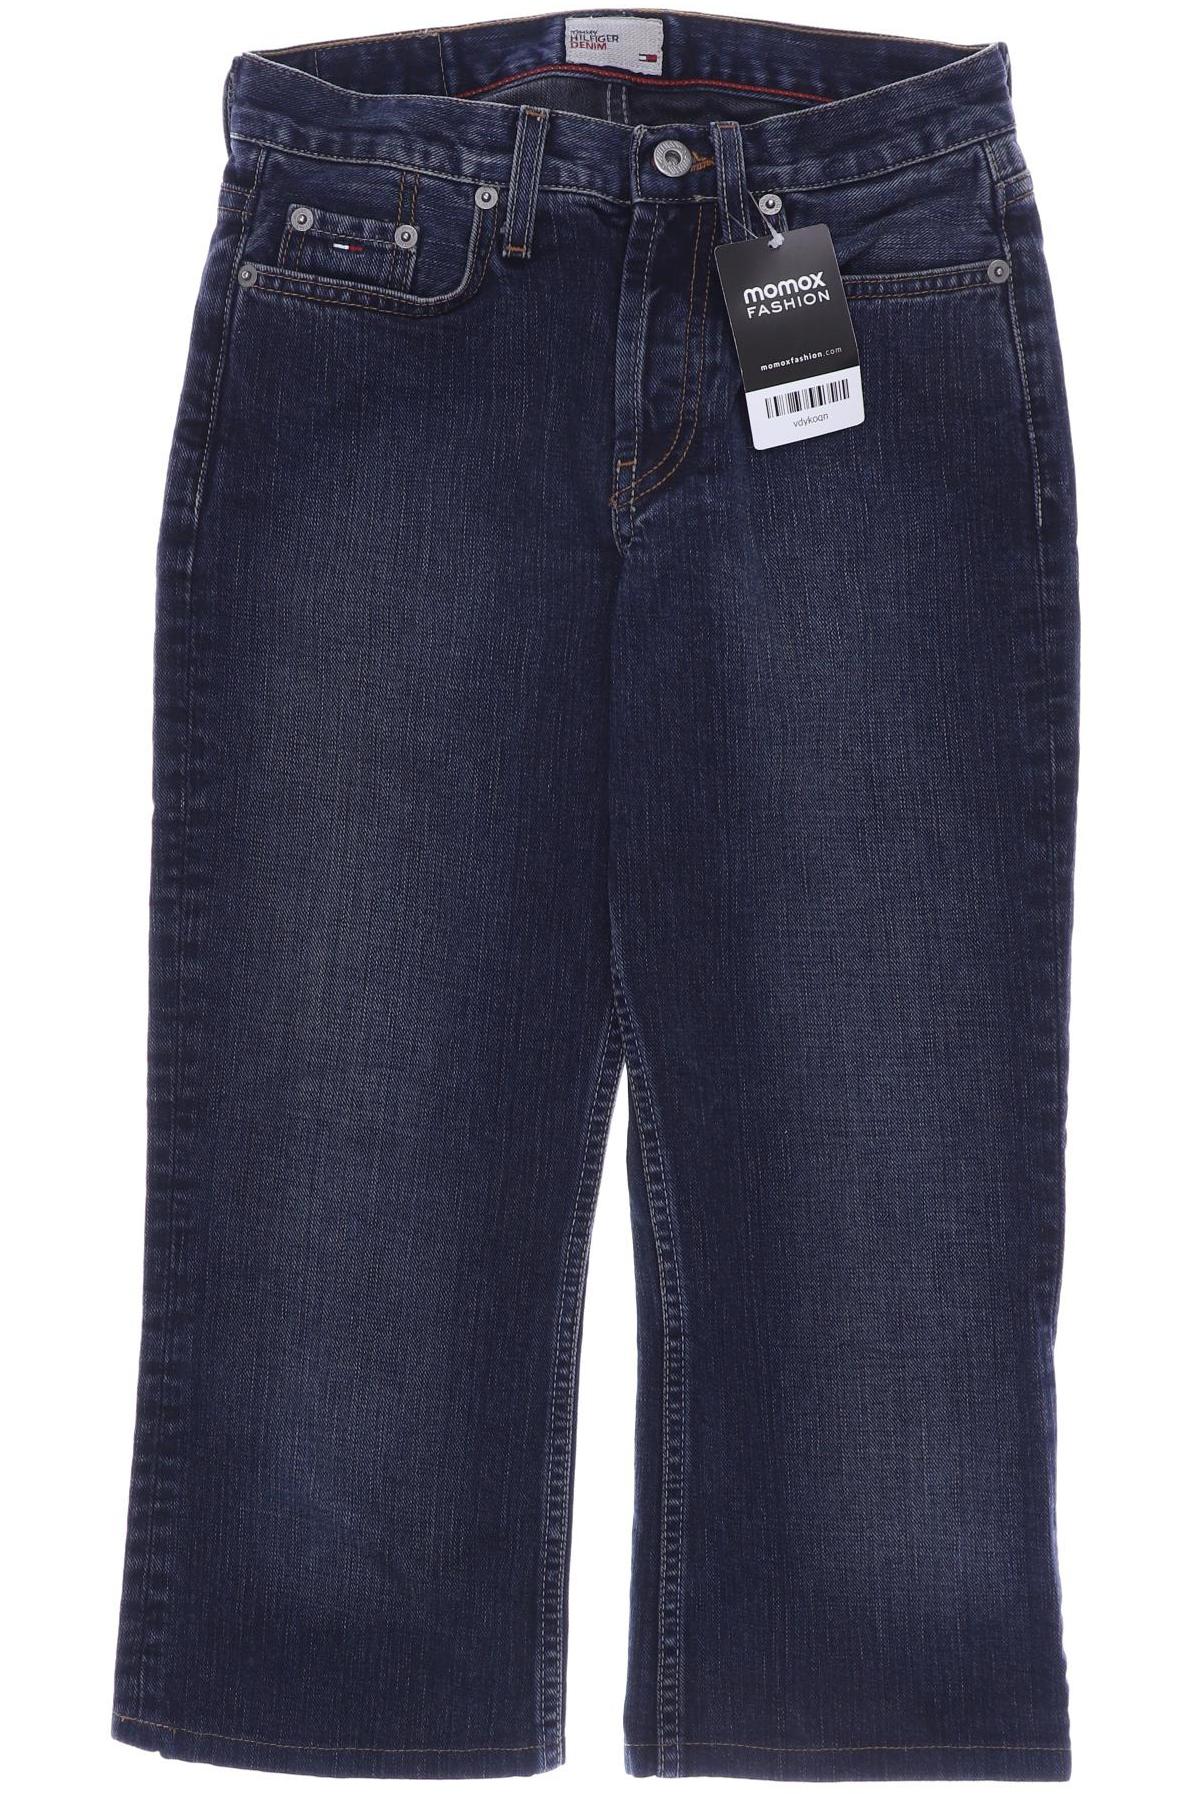 HILFIGER DENIM Damen Jeans, marineblau von Hilfiger Denim